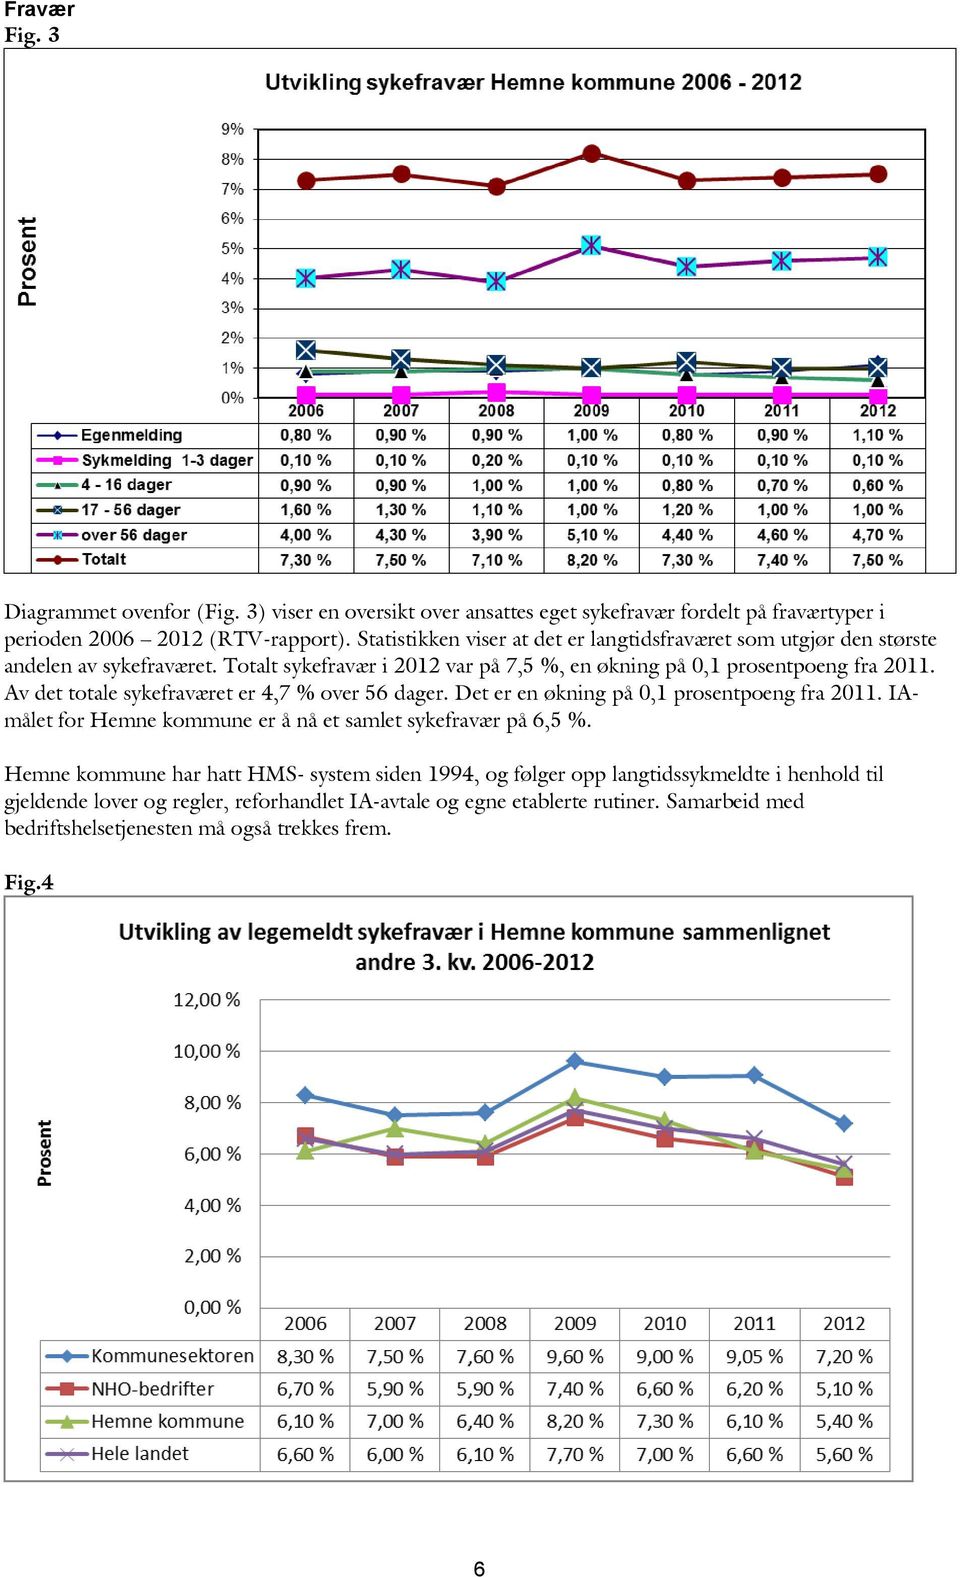 Av det totale sykefraværet er 4,7 % over 56 dager. Det er en økning på 0,1 prosentpoeng fra 2011. IAmålet for Hemne kommune er å nå et samlet sykefravær på 6,5 %.